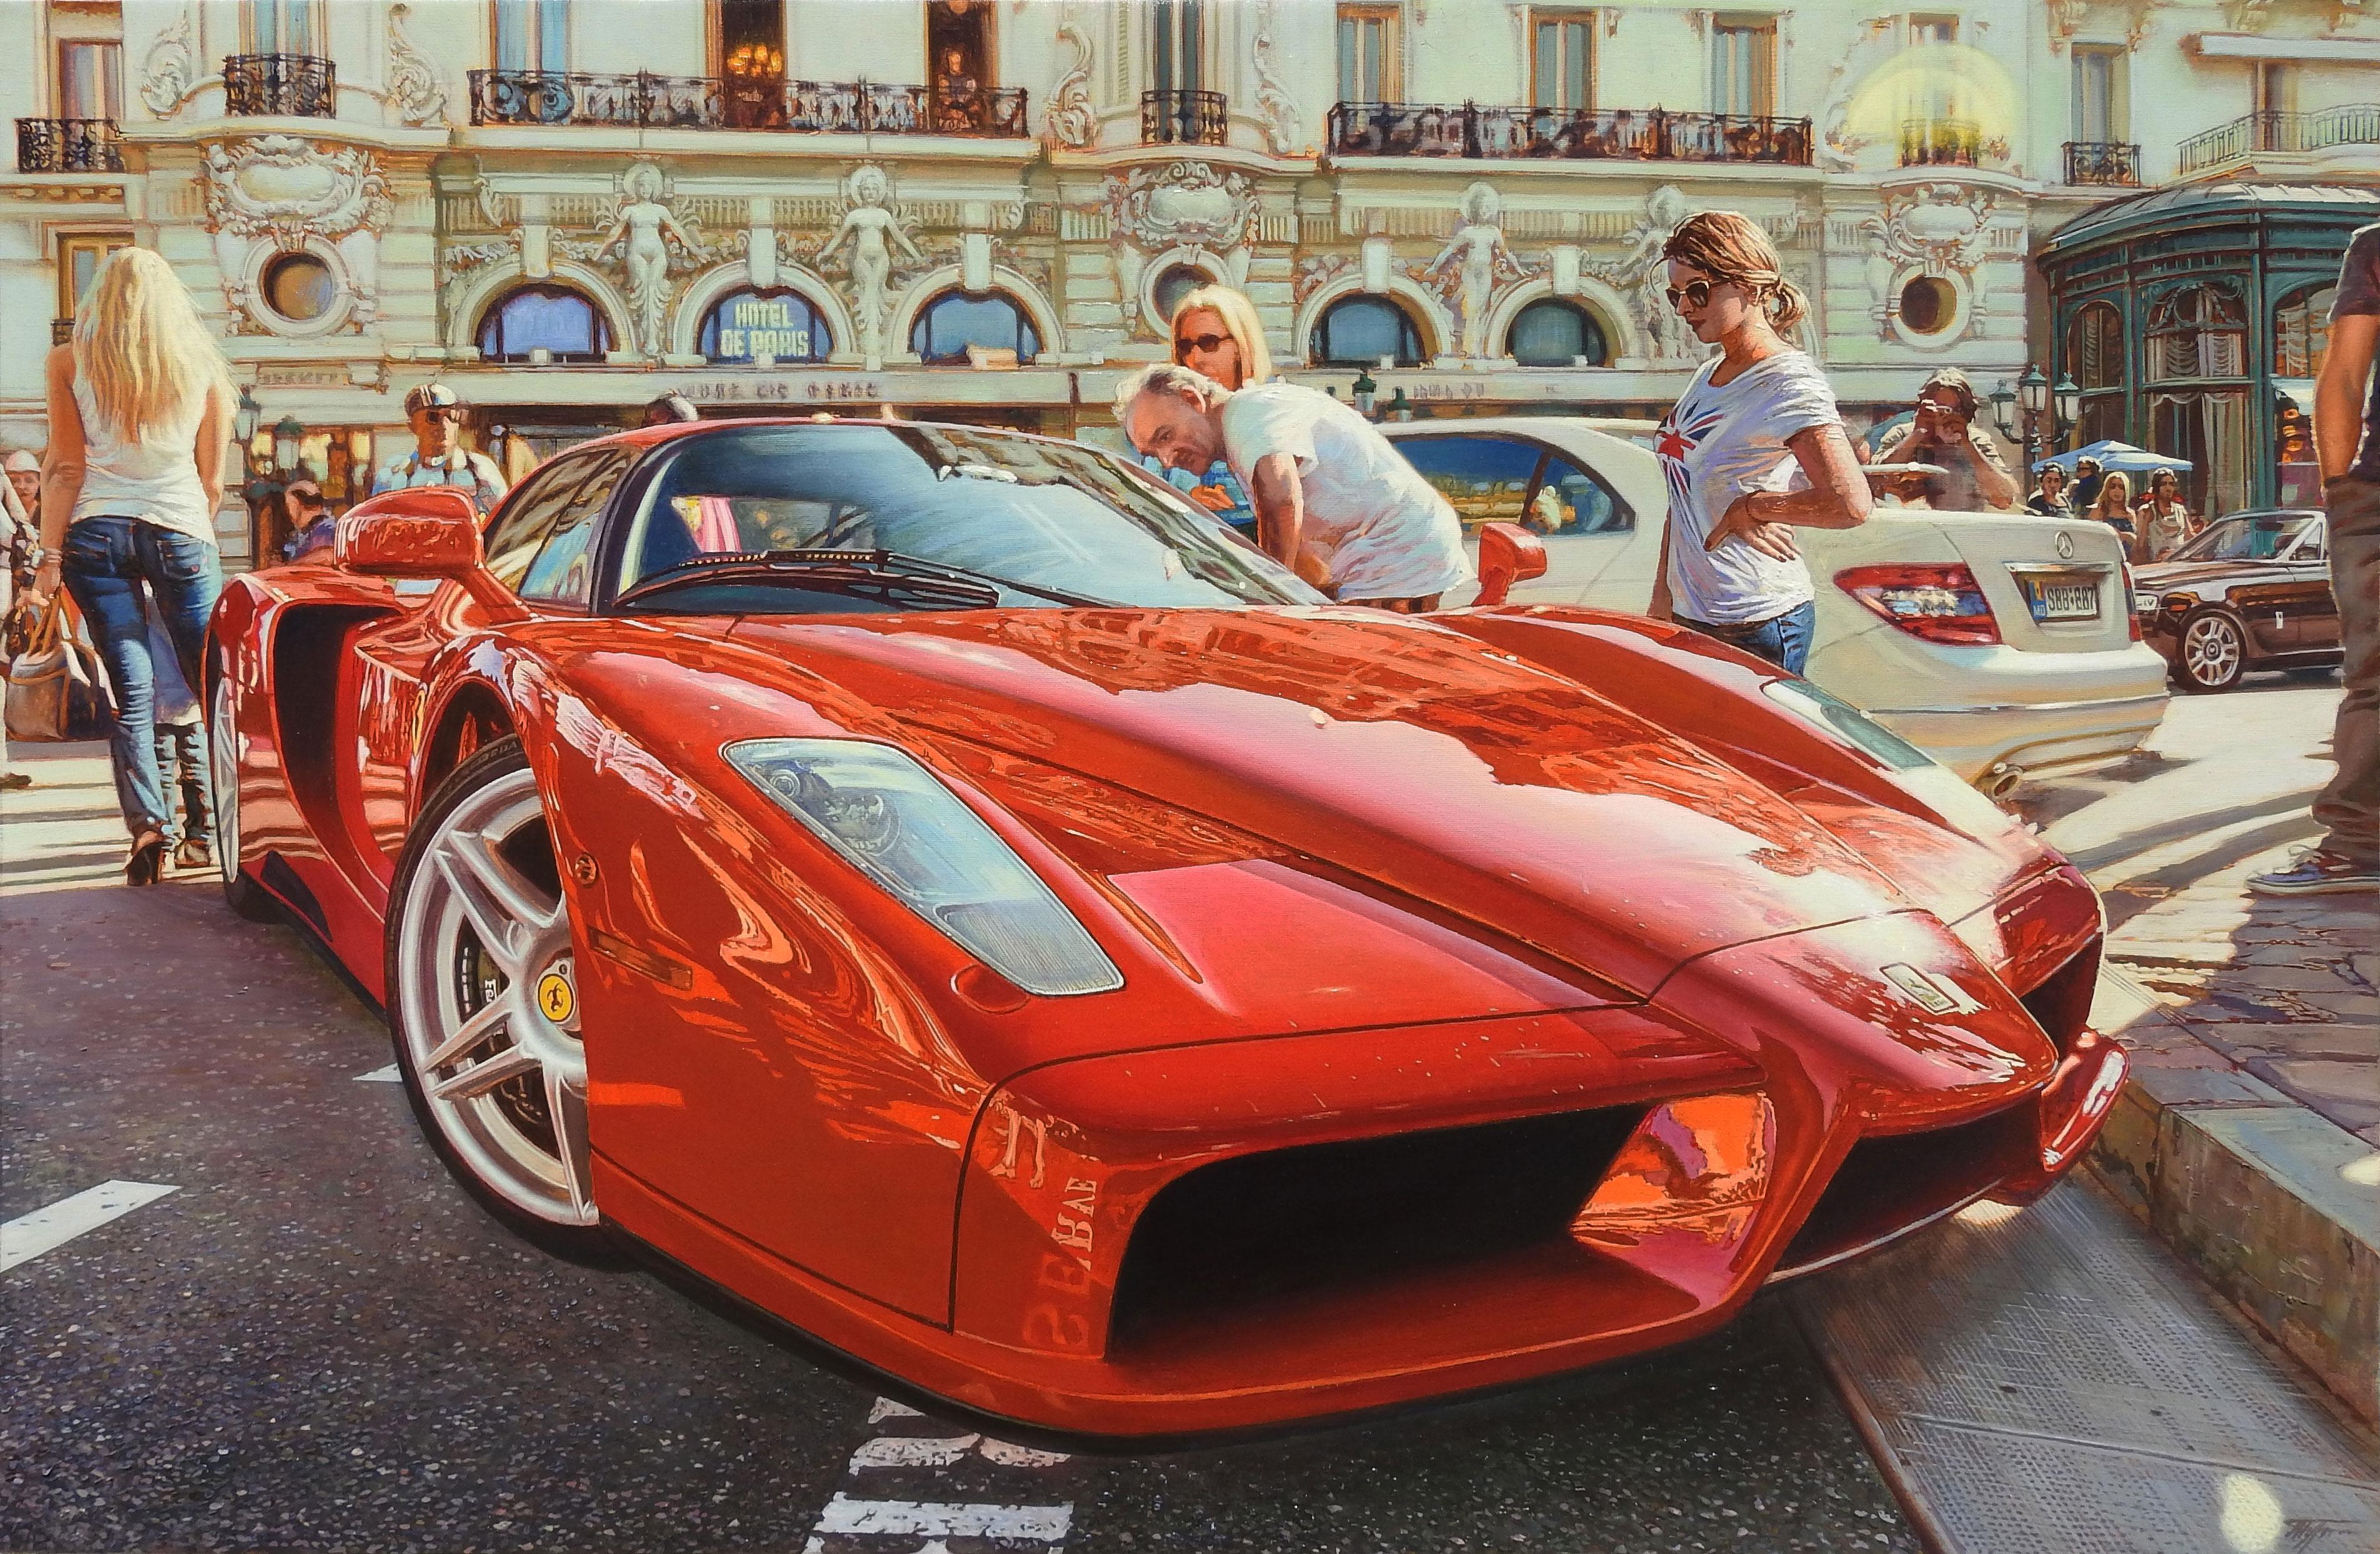 Oleg Turchins "Ferrari Enzo" ist ein Ölgemälde auf Leinwand mit den Maßen 36" x 54". 

Tauchen Sie ein in die Welt der italienischen Autokultur mit Oleg Turchins neuestem Meisterwerk, einem atemberaubenden Gemälde eines roten Ferrari Enzo bei einer